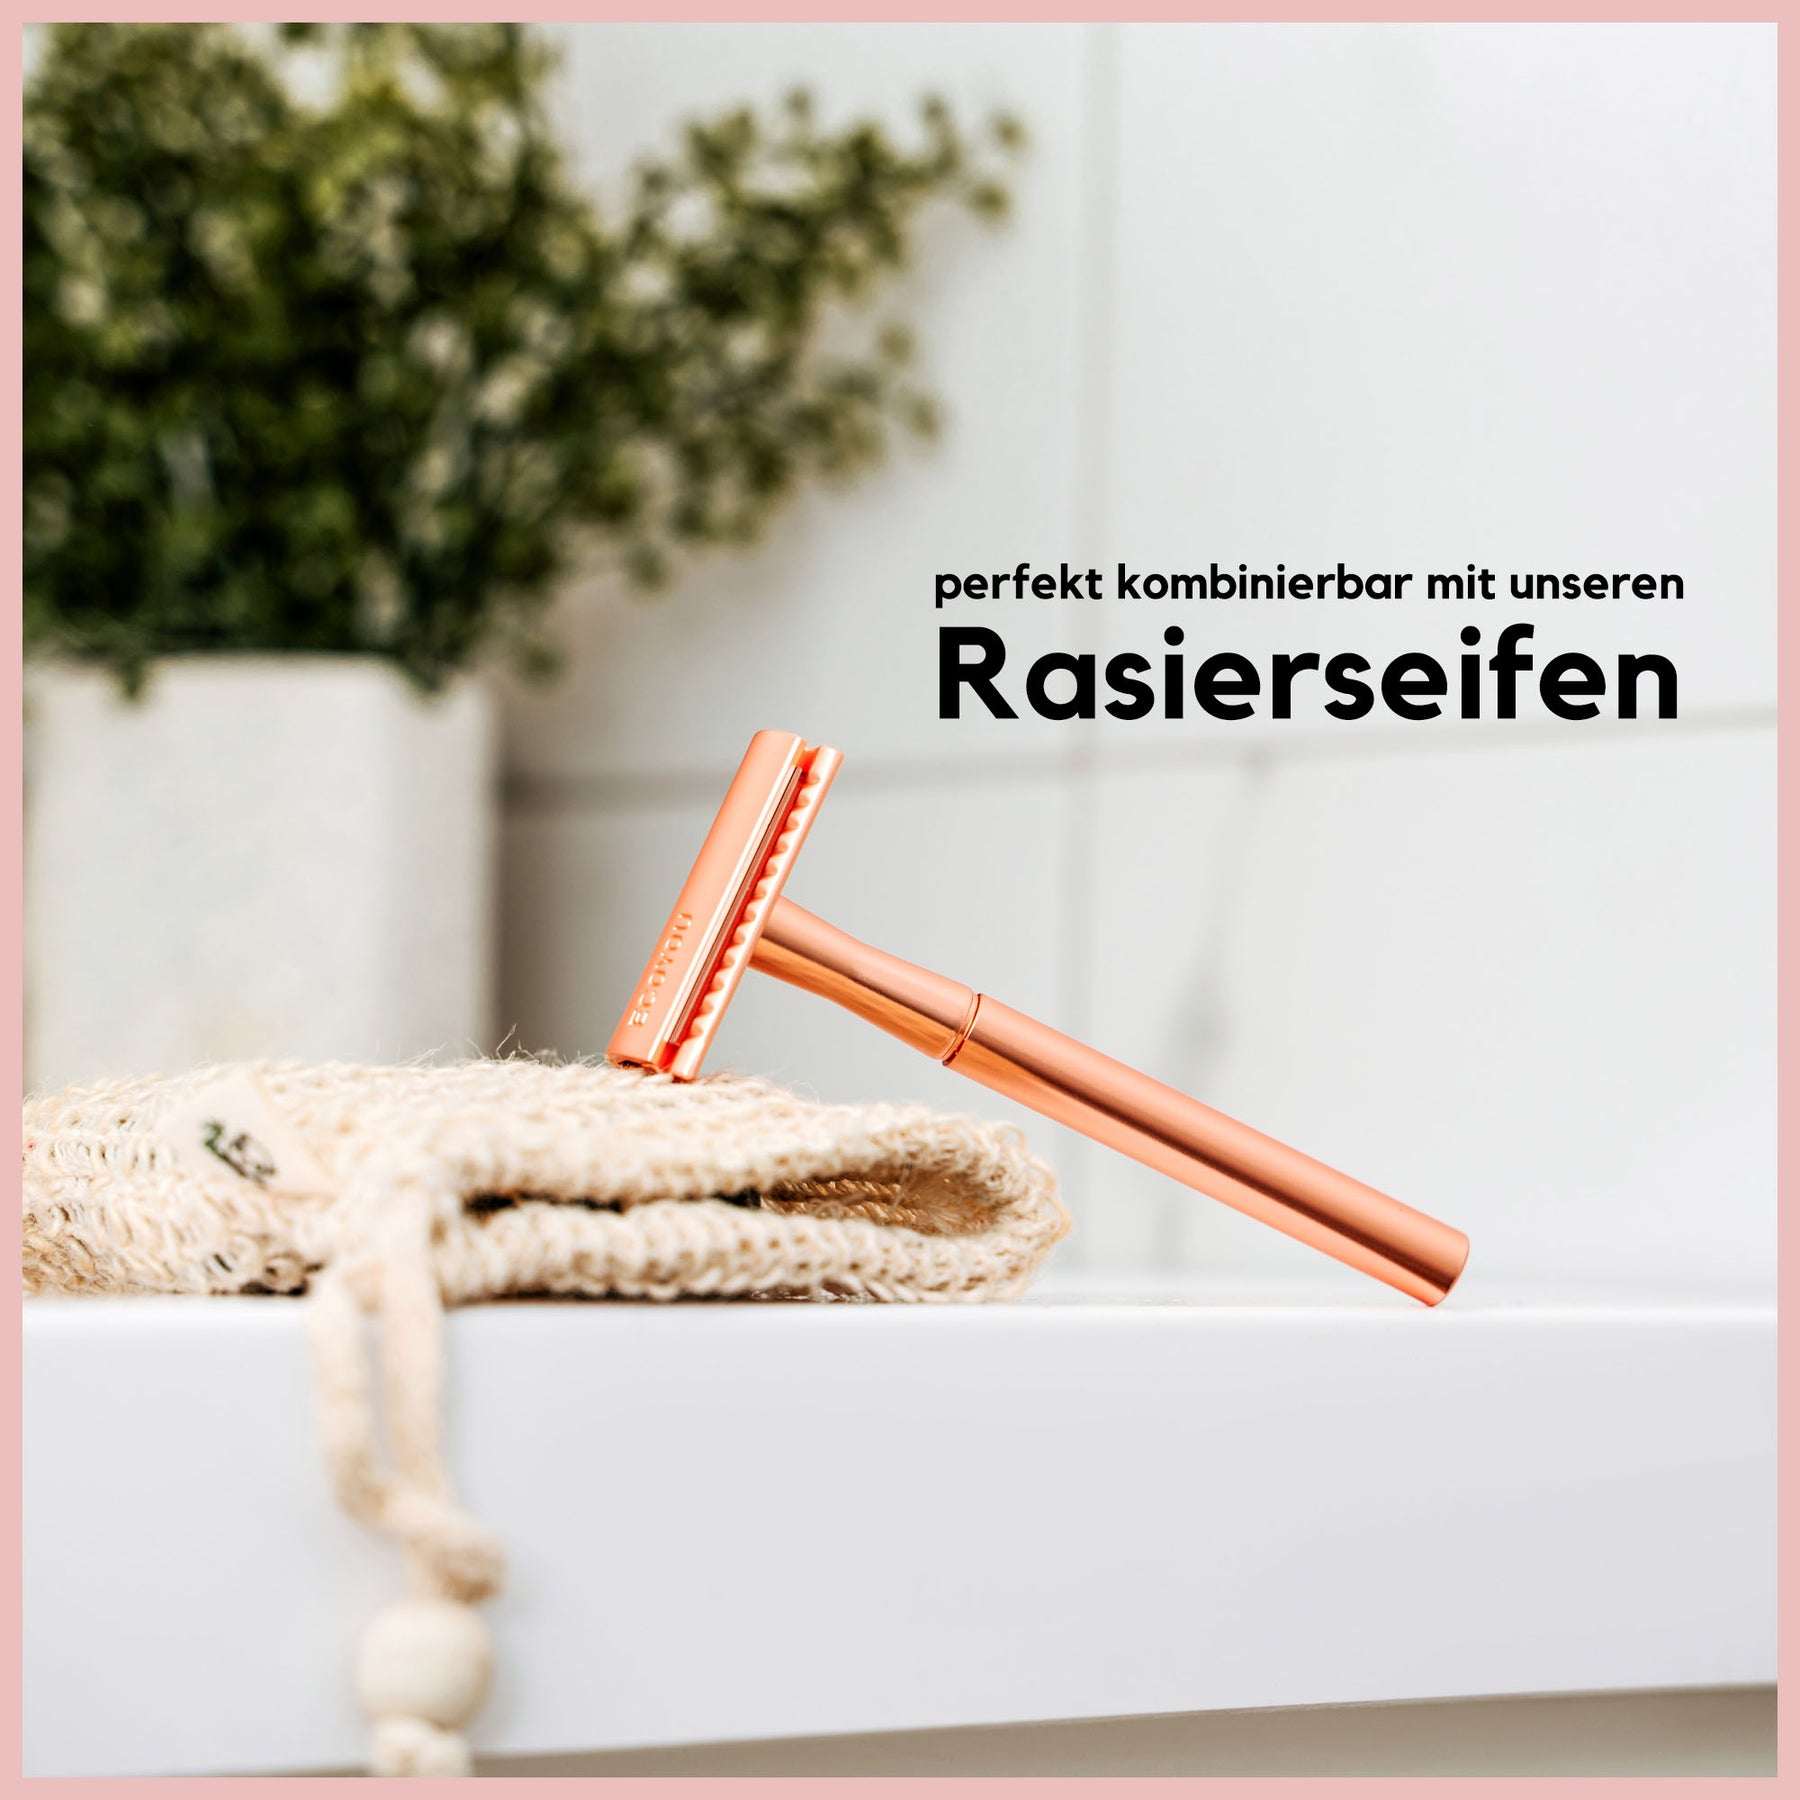 Rasierhobel Metallic - Rosé inkl. 10 Rasierklingen - EcoYou